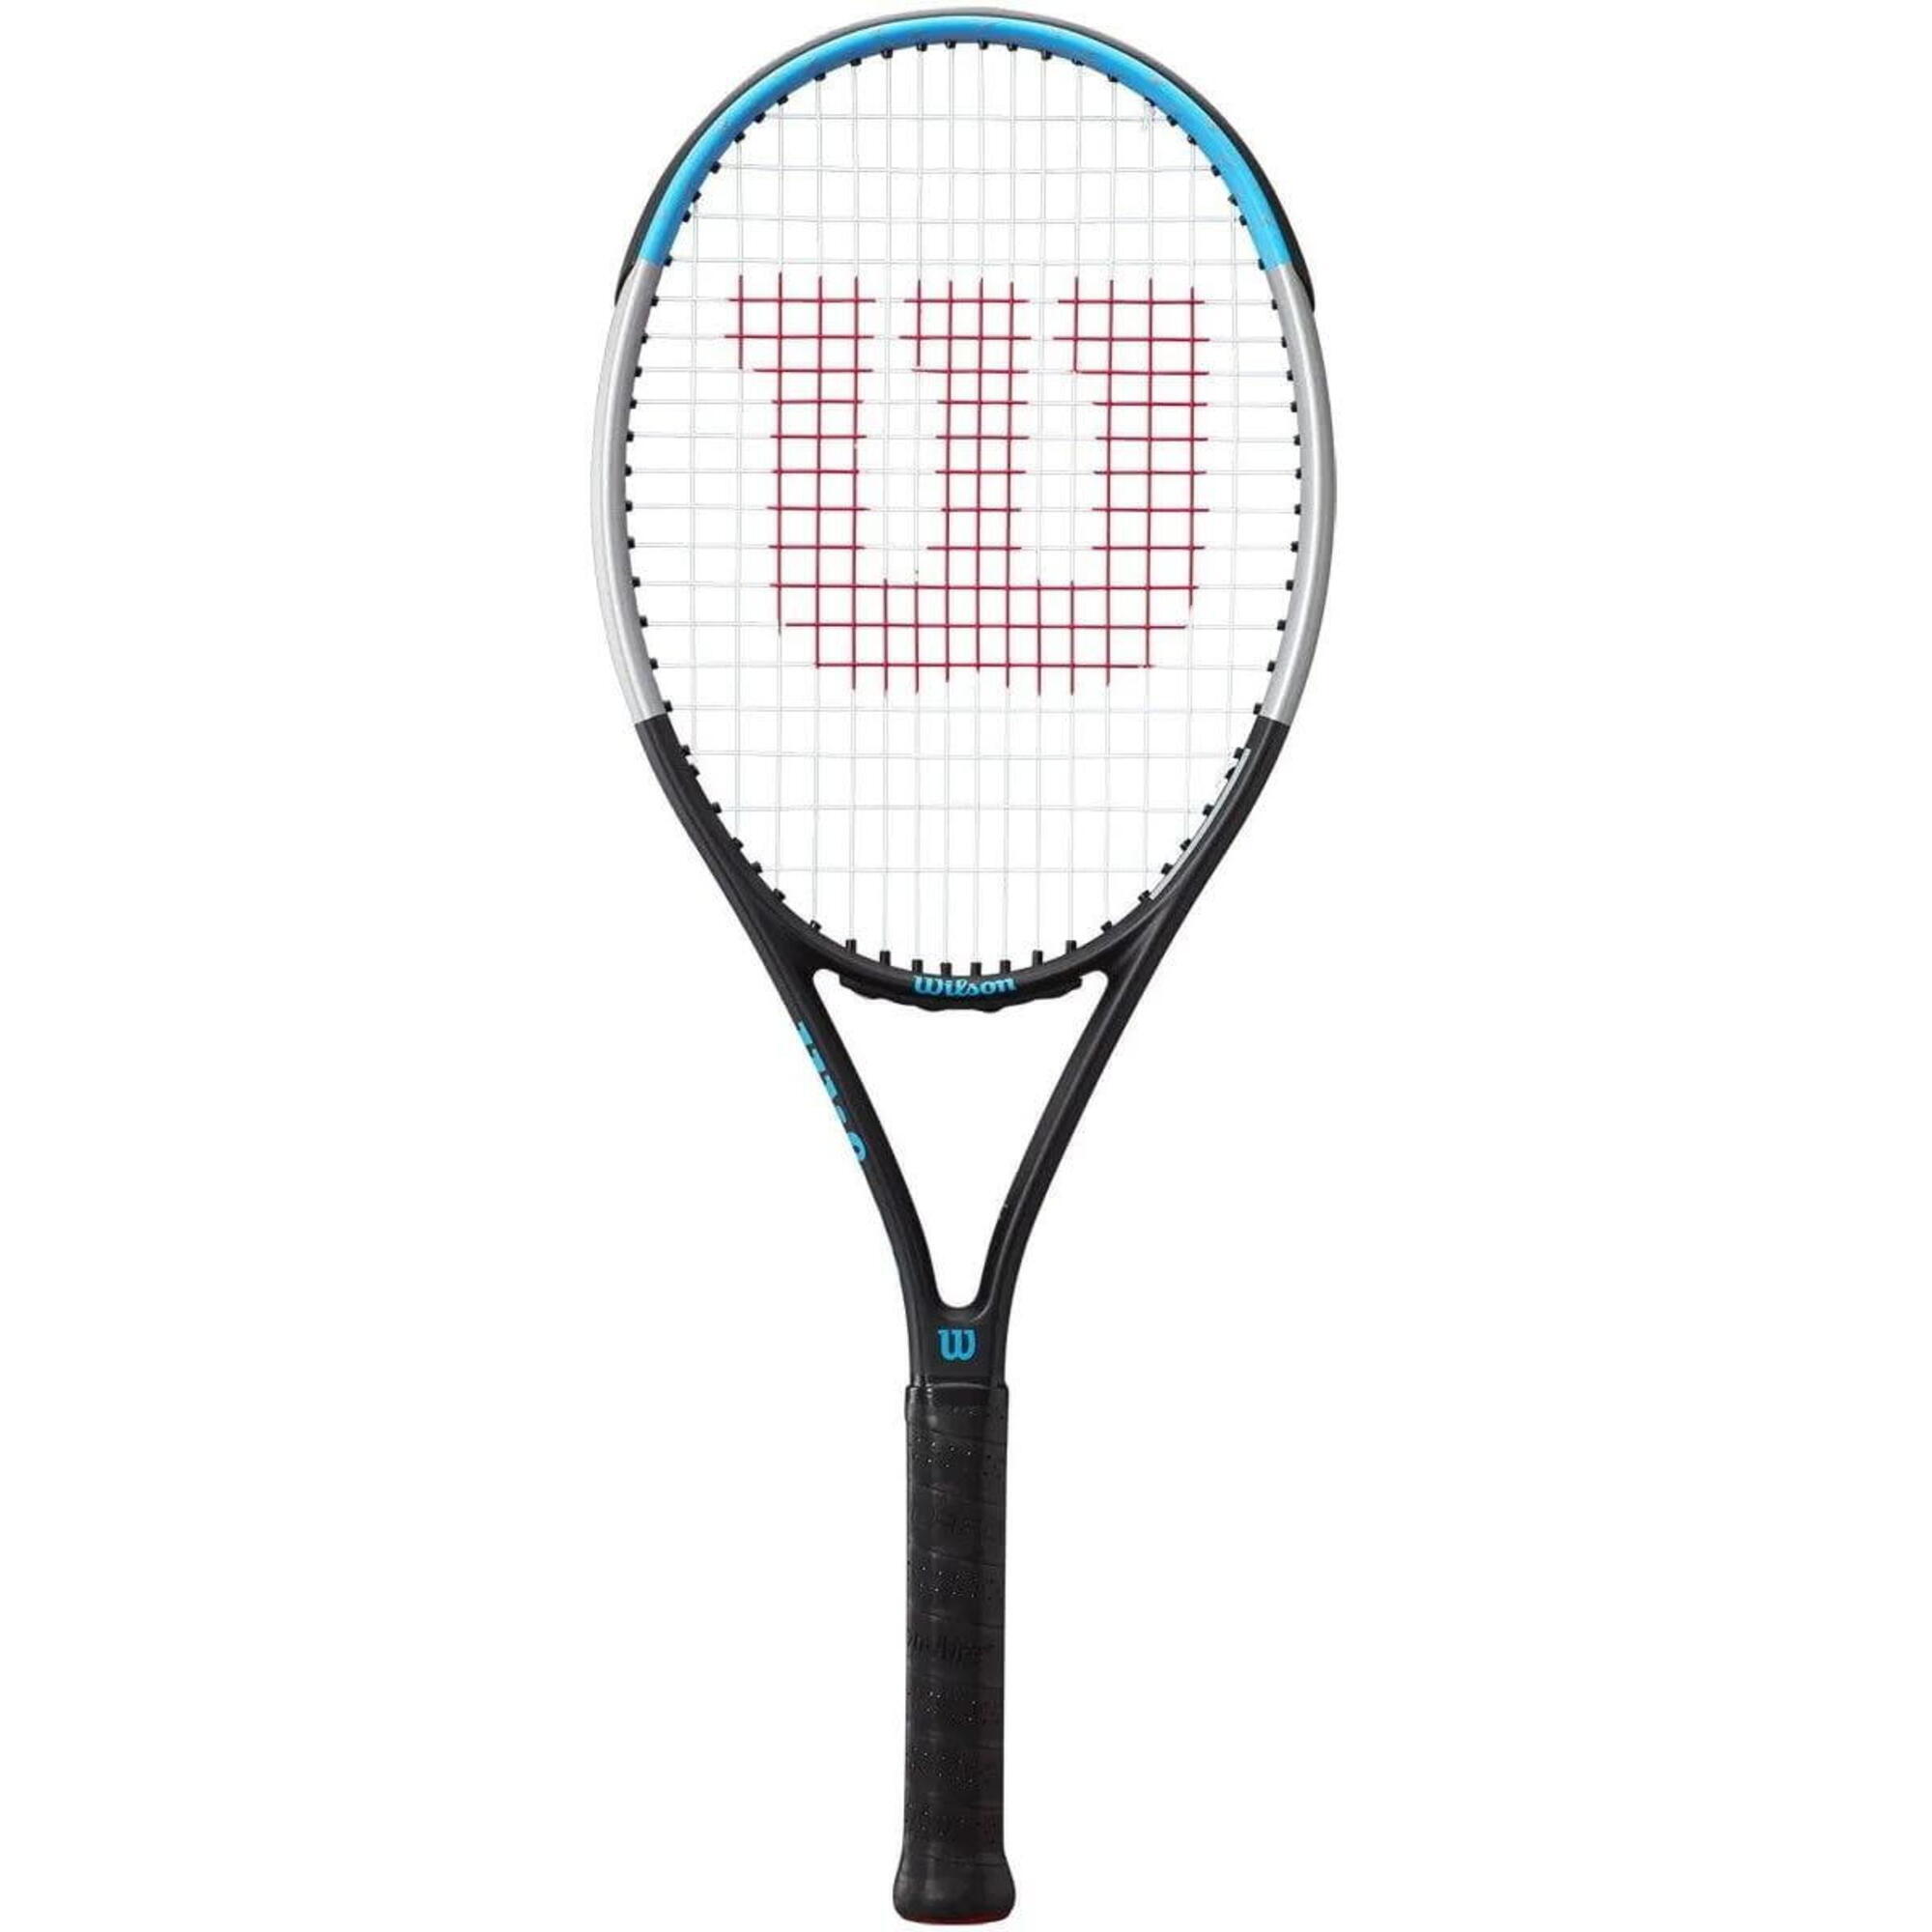 WILSON Wilson Ultra Power 100 Graphite Tennis Racket - GRADE A